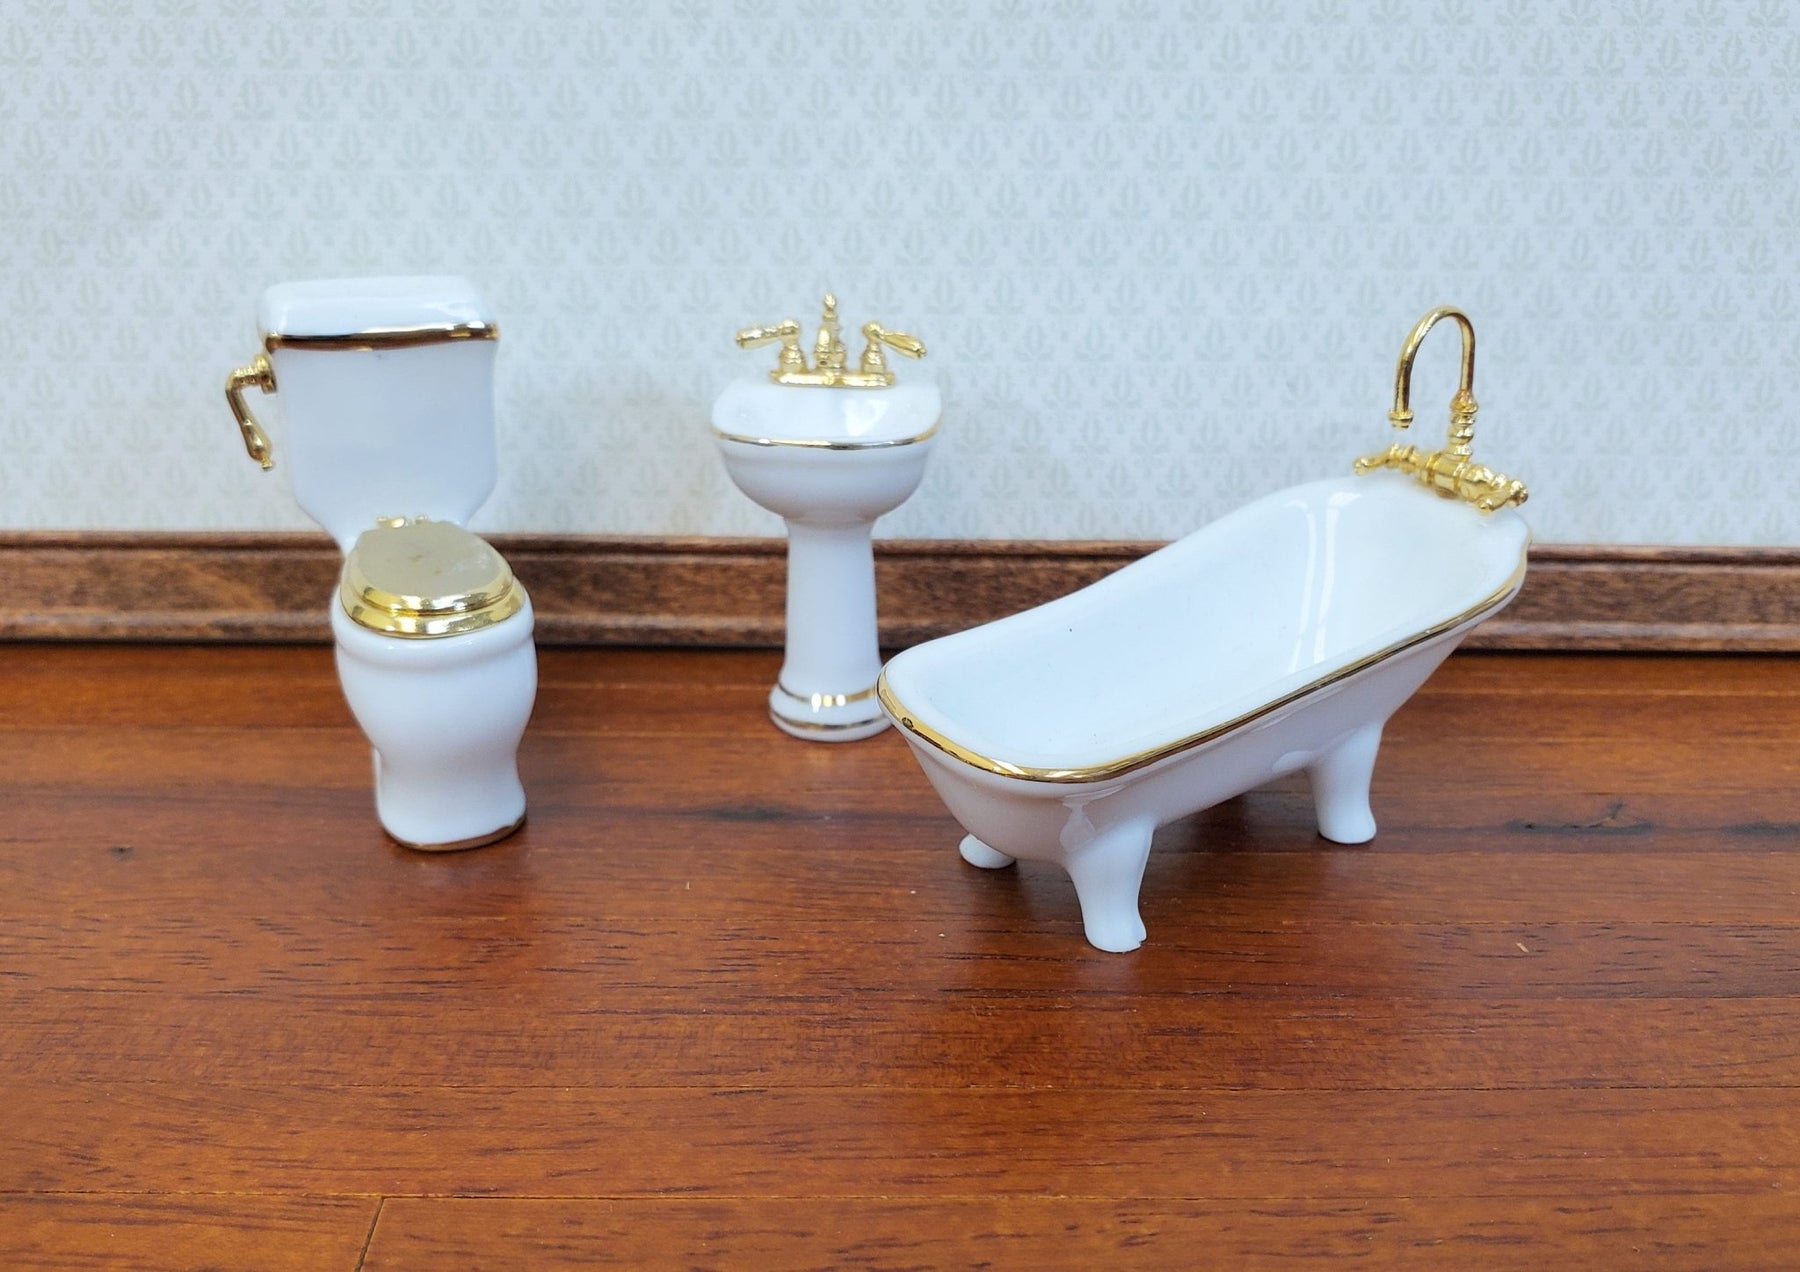 Dollhouse HALF SCALE Bathroom Gold Tub Miniature 24k Accents 1:24 Reutter Miniatures Set Toilet Sink - Crush Porcelain